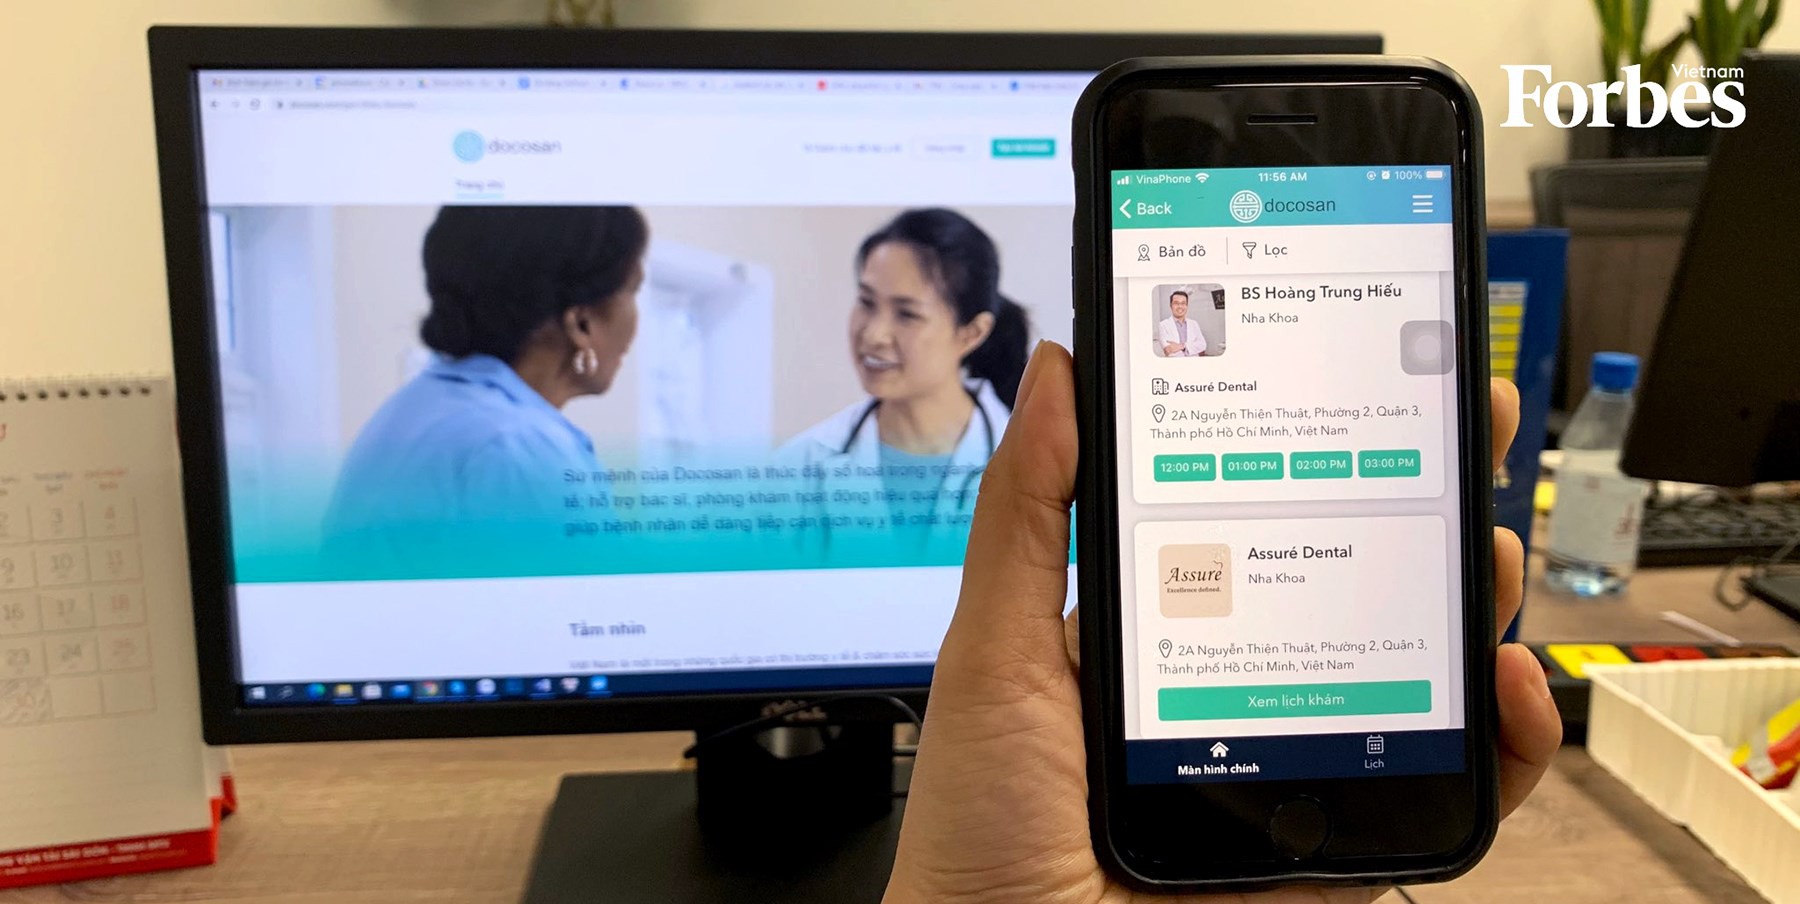 Startuo Docosan cung cấp dịch vụ tham vấn sức khỏe từ xa miễn phí.